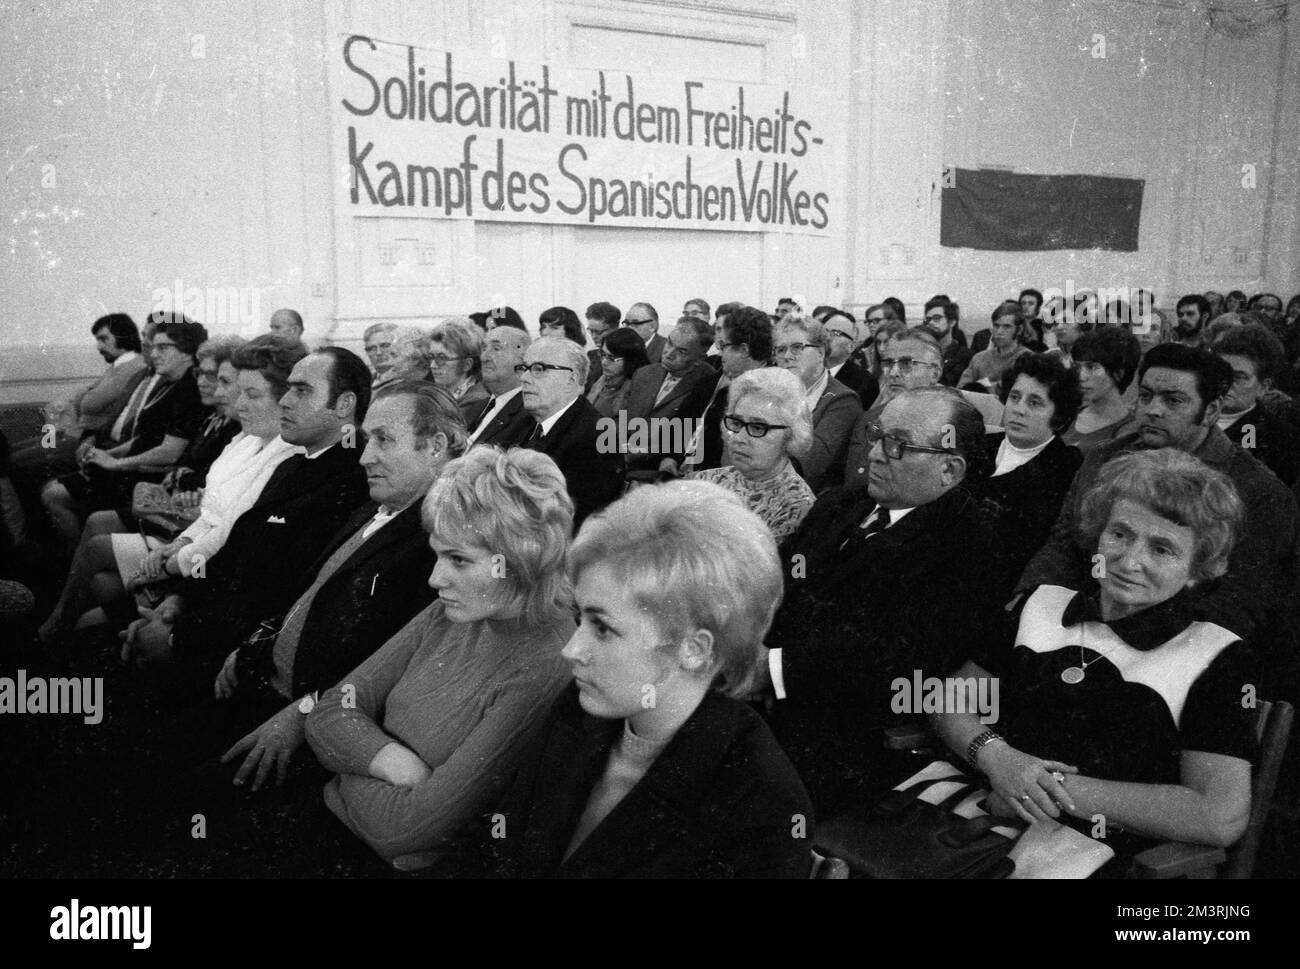 Comunisti e leftisti hanno commemorato il 35th° anniversario delle Brigate internazionali nella guerra civile spagnola del 1936 il 6/11/1971 a Wuppertal Foto Stock